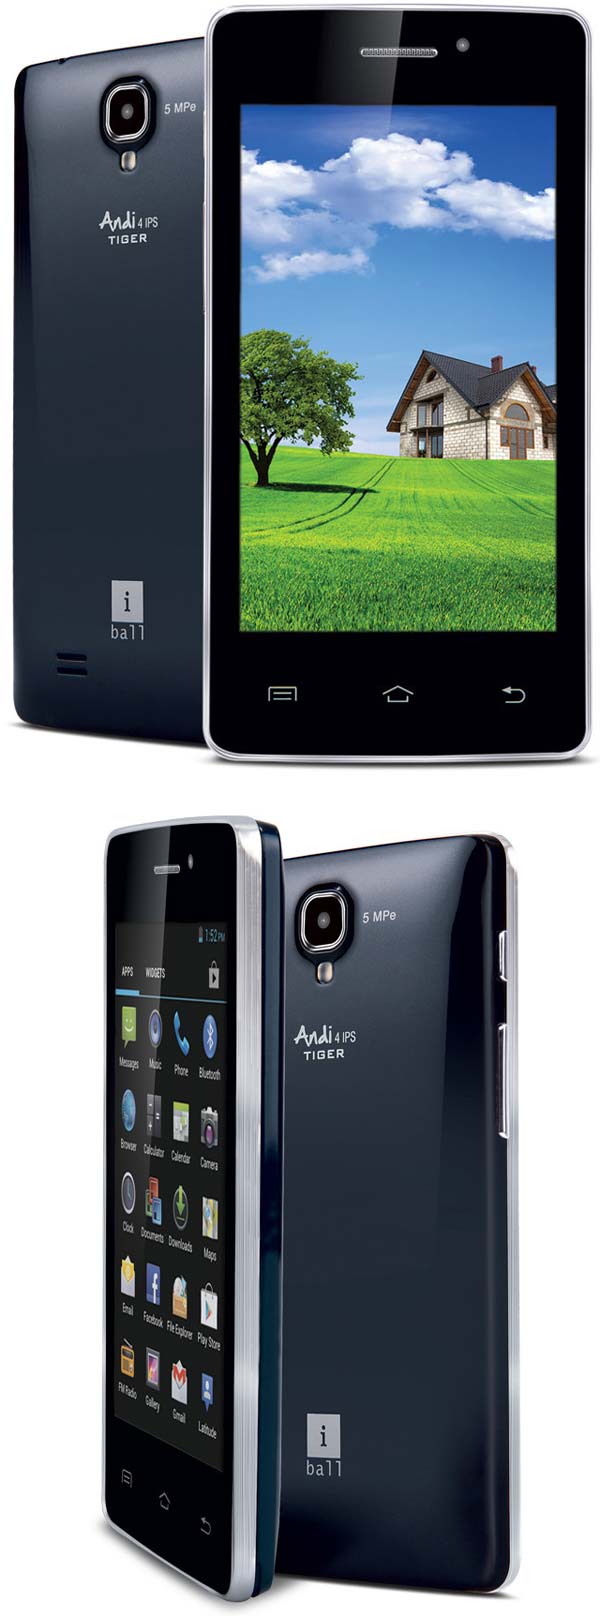 Новый смартфон от iBall - Andi4 IPS Tiger